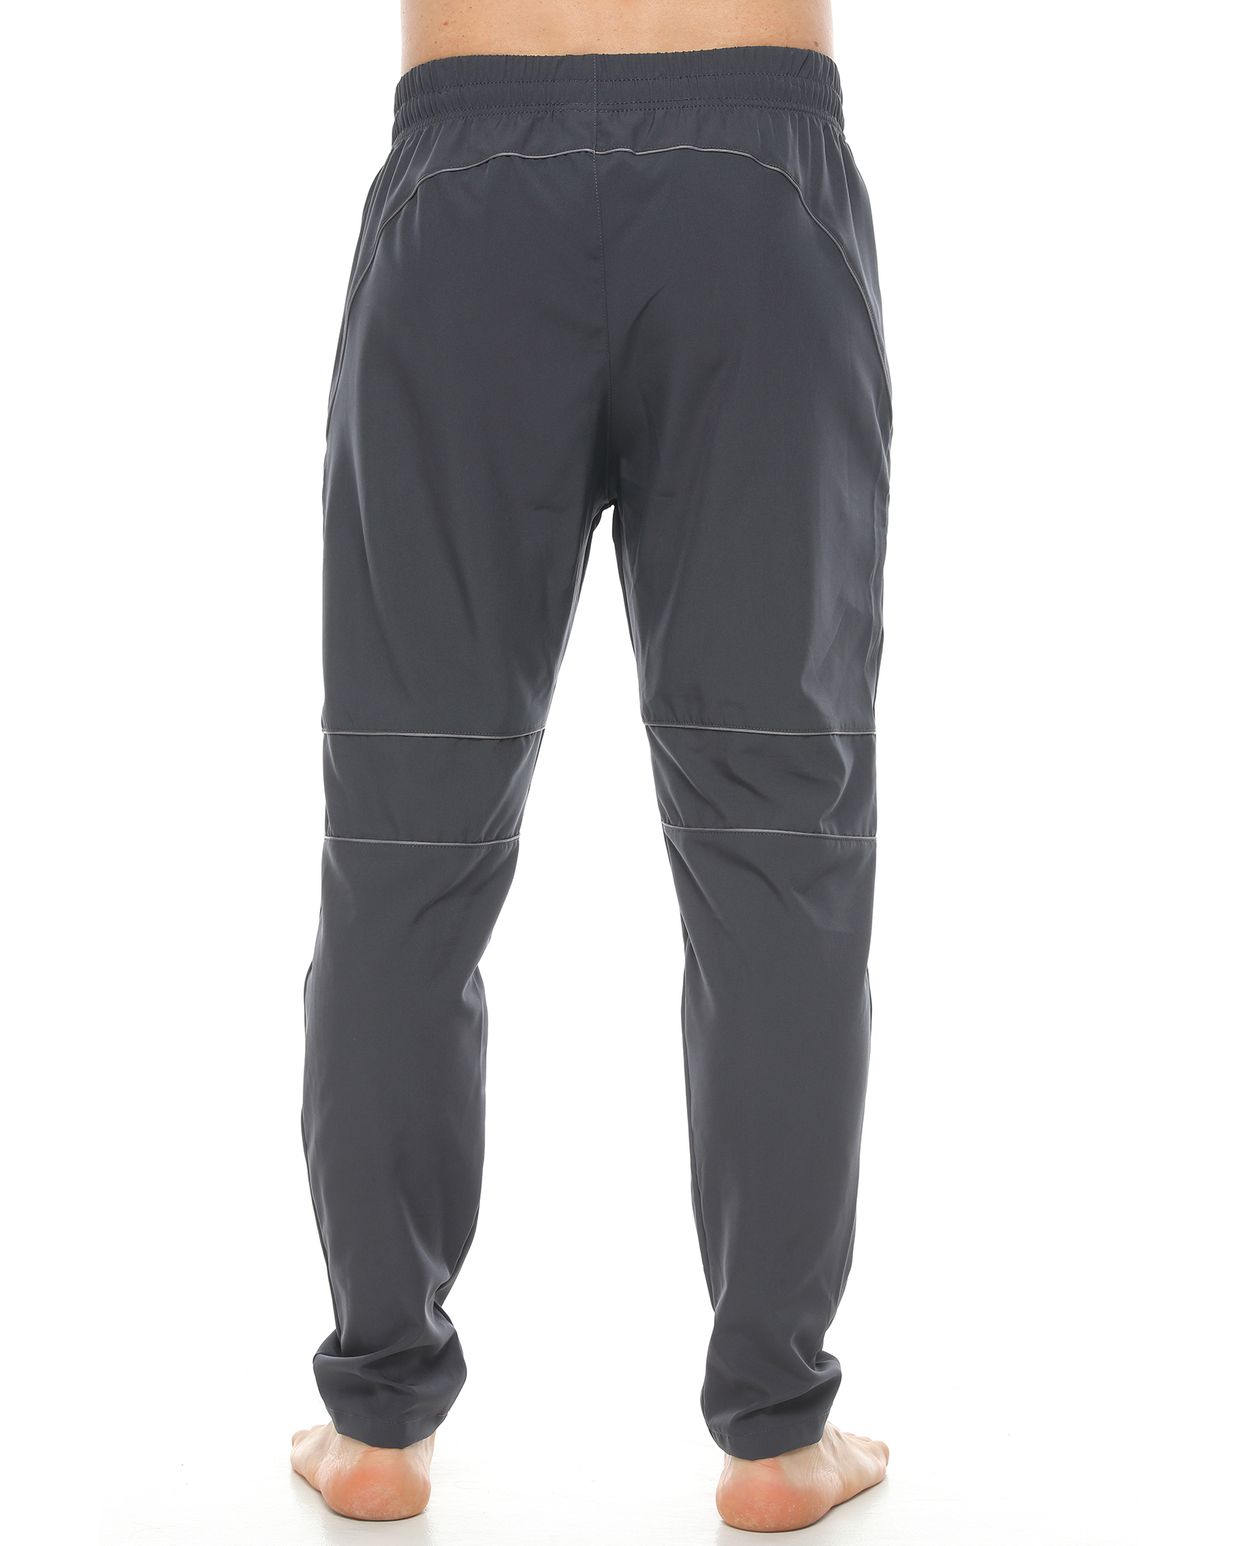 Pantalón deportivo hombre, color gris oscuro - racketball movil